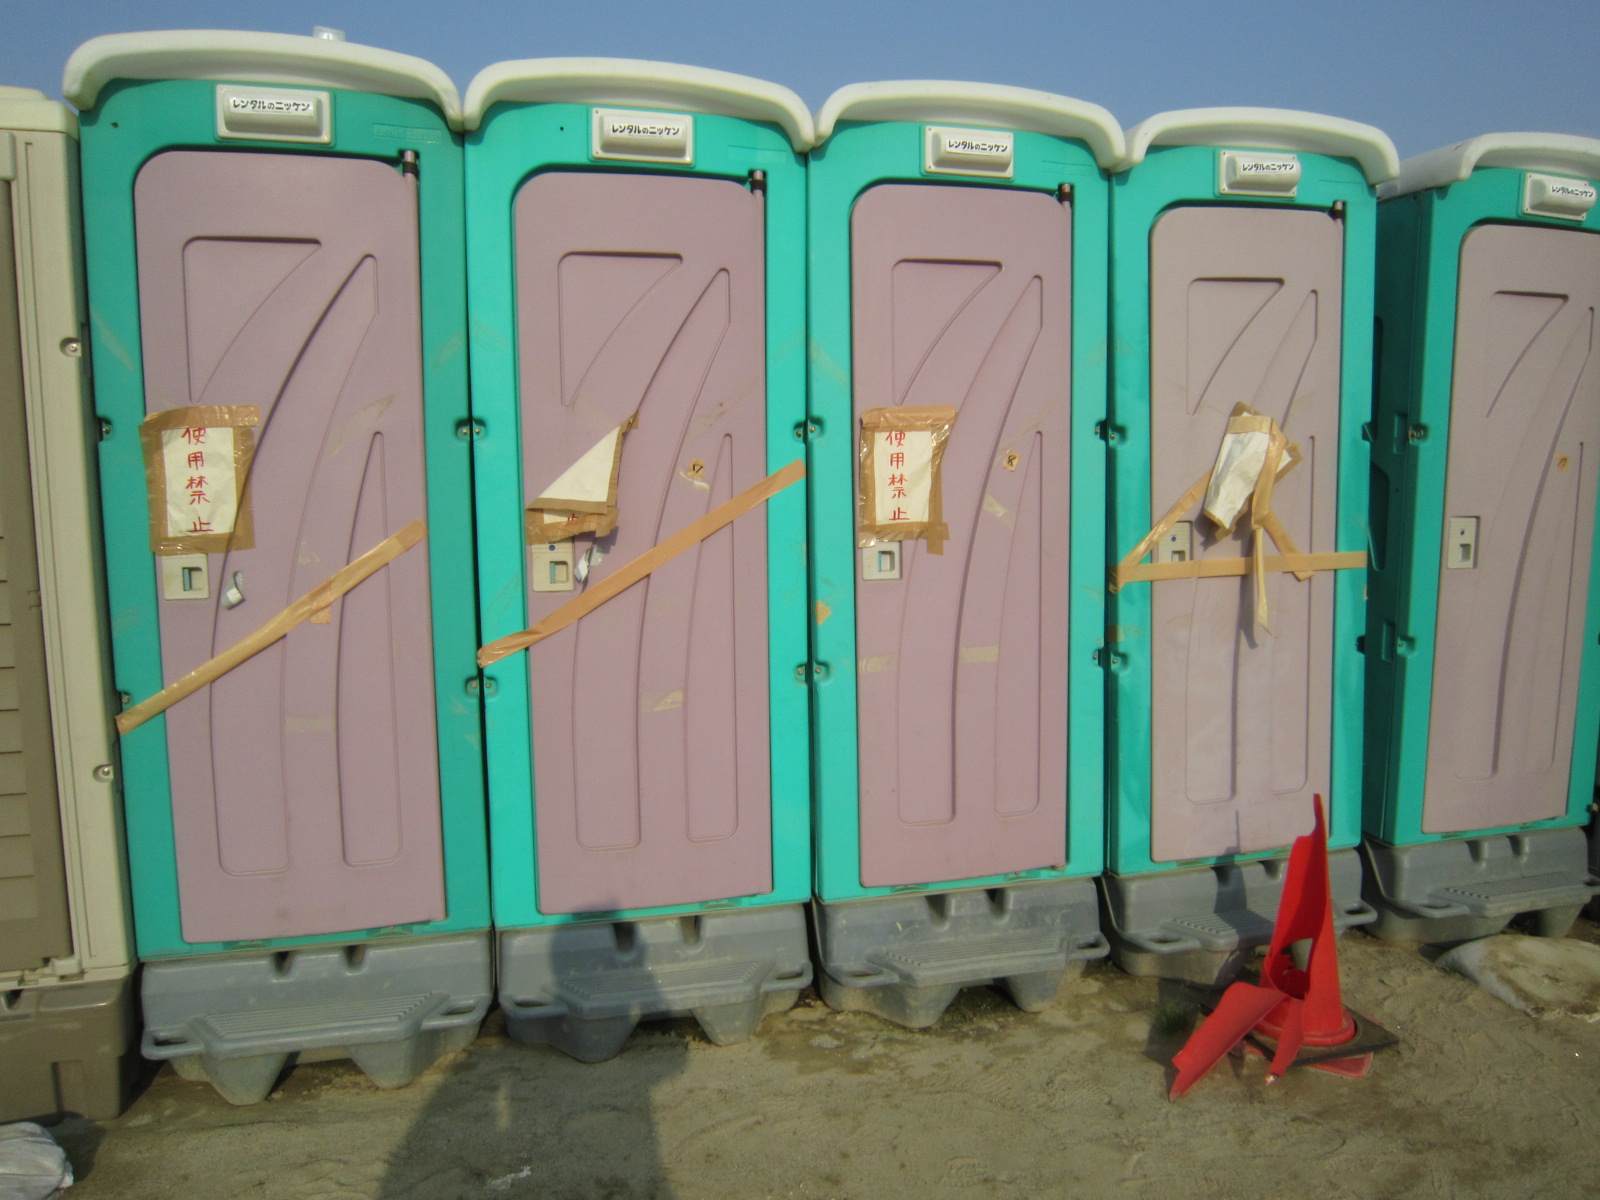 バキュームカー不足で汲み取りができず、使用禁止になった仮設トイレ